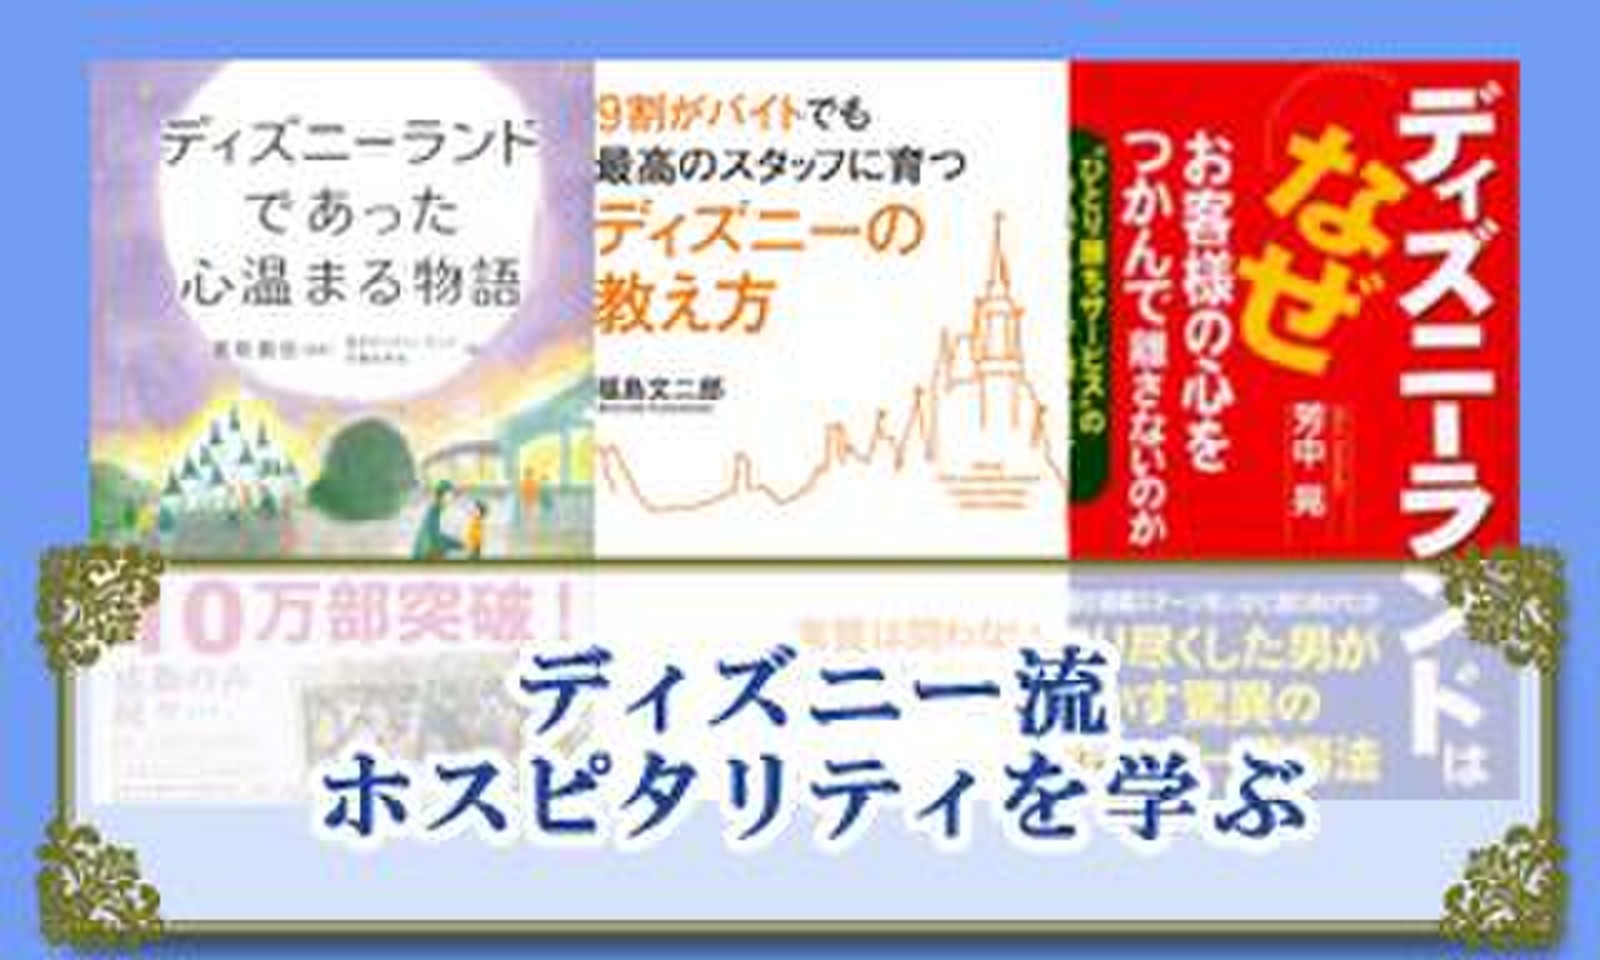 ディズニー流ホスピタリティを学ぶ 日本最大級のオーディオブック配信サービス Audiobook Jp